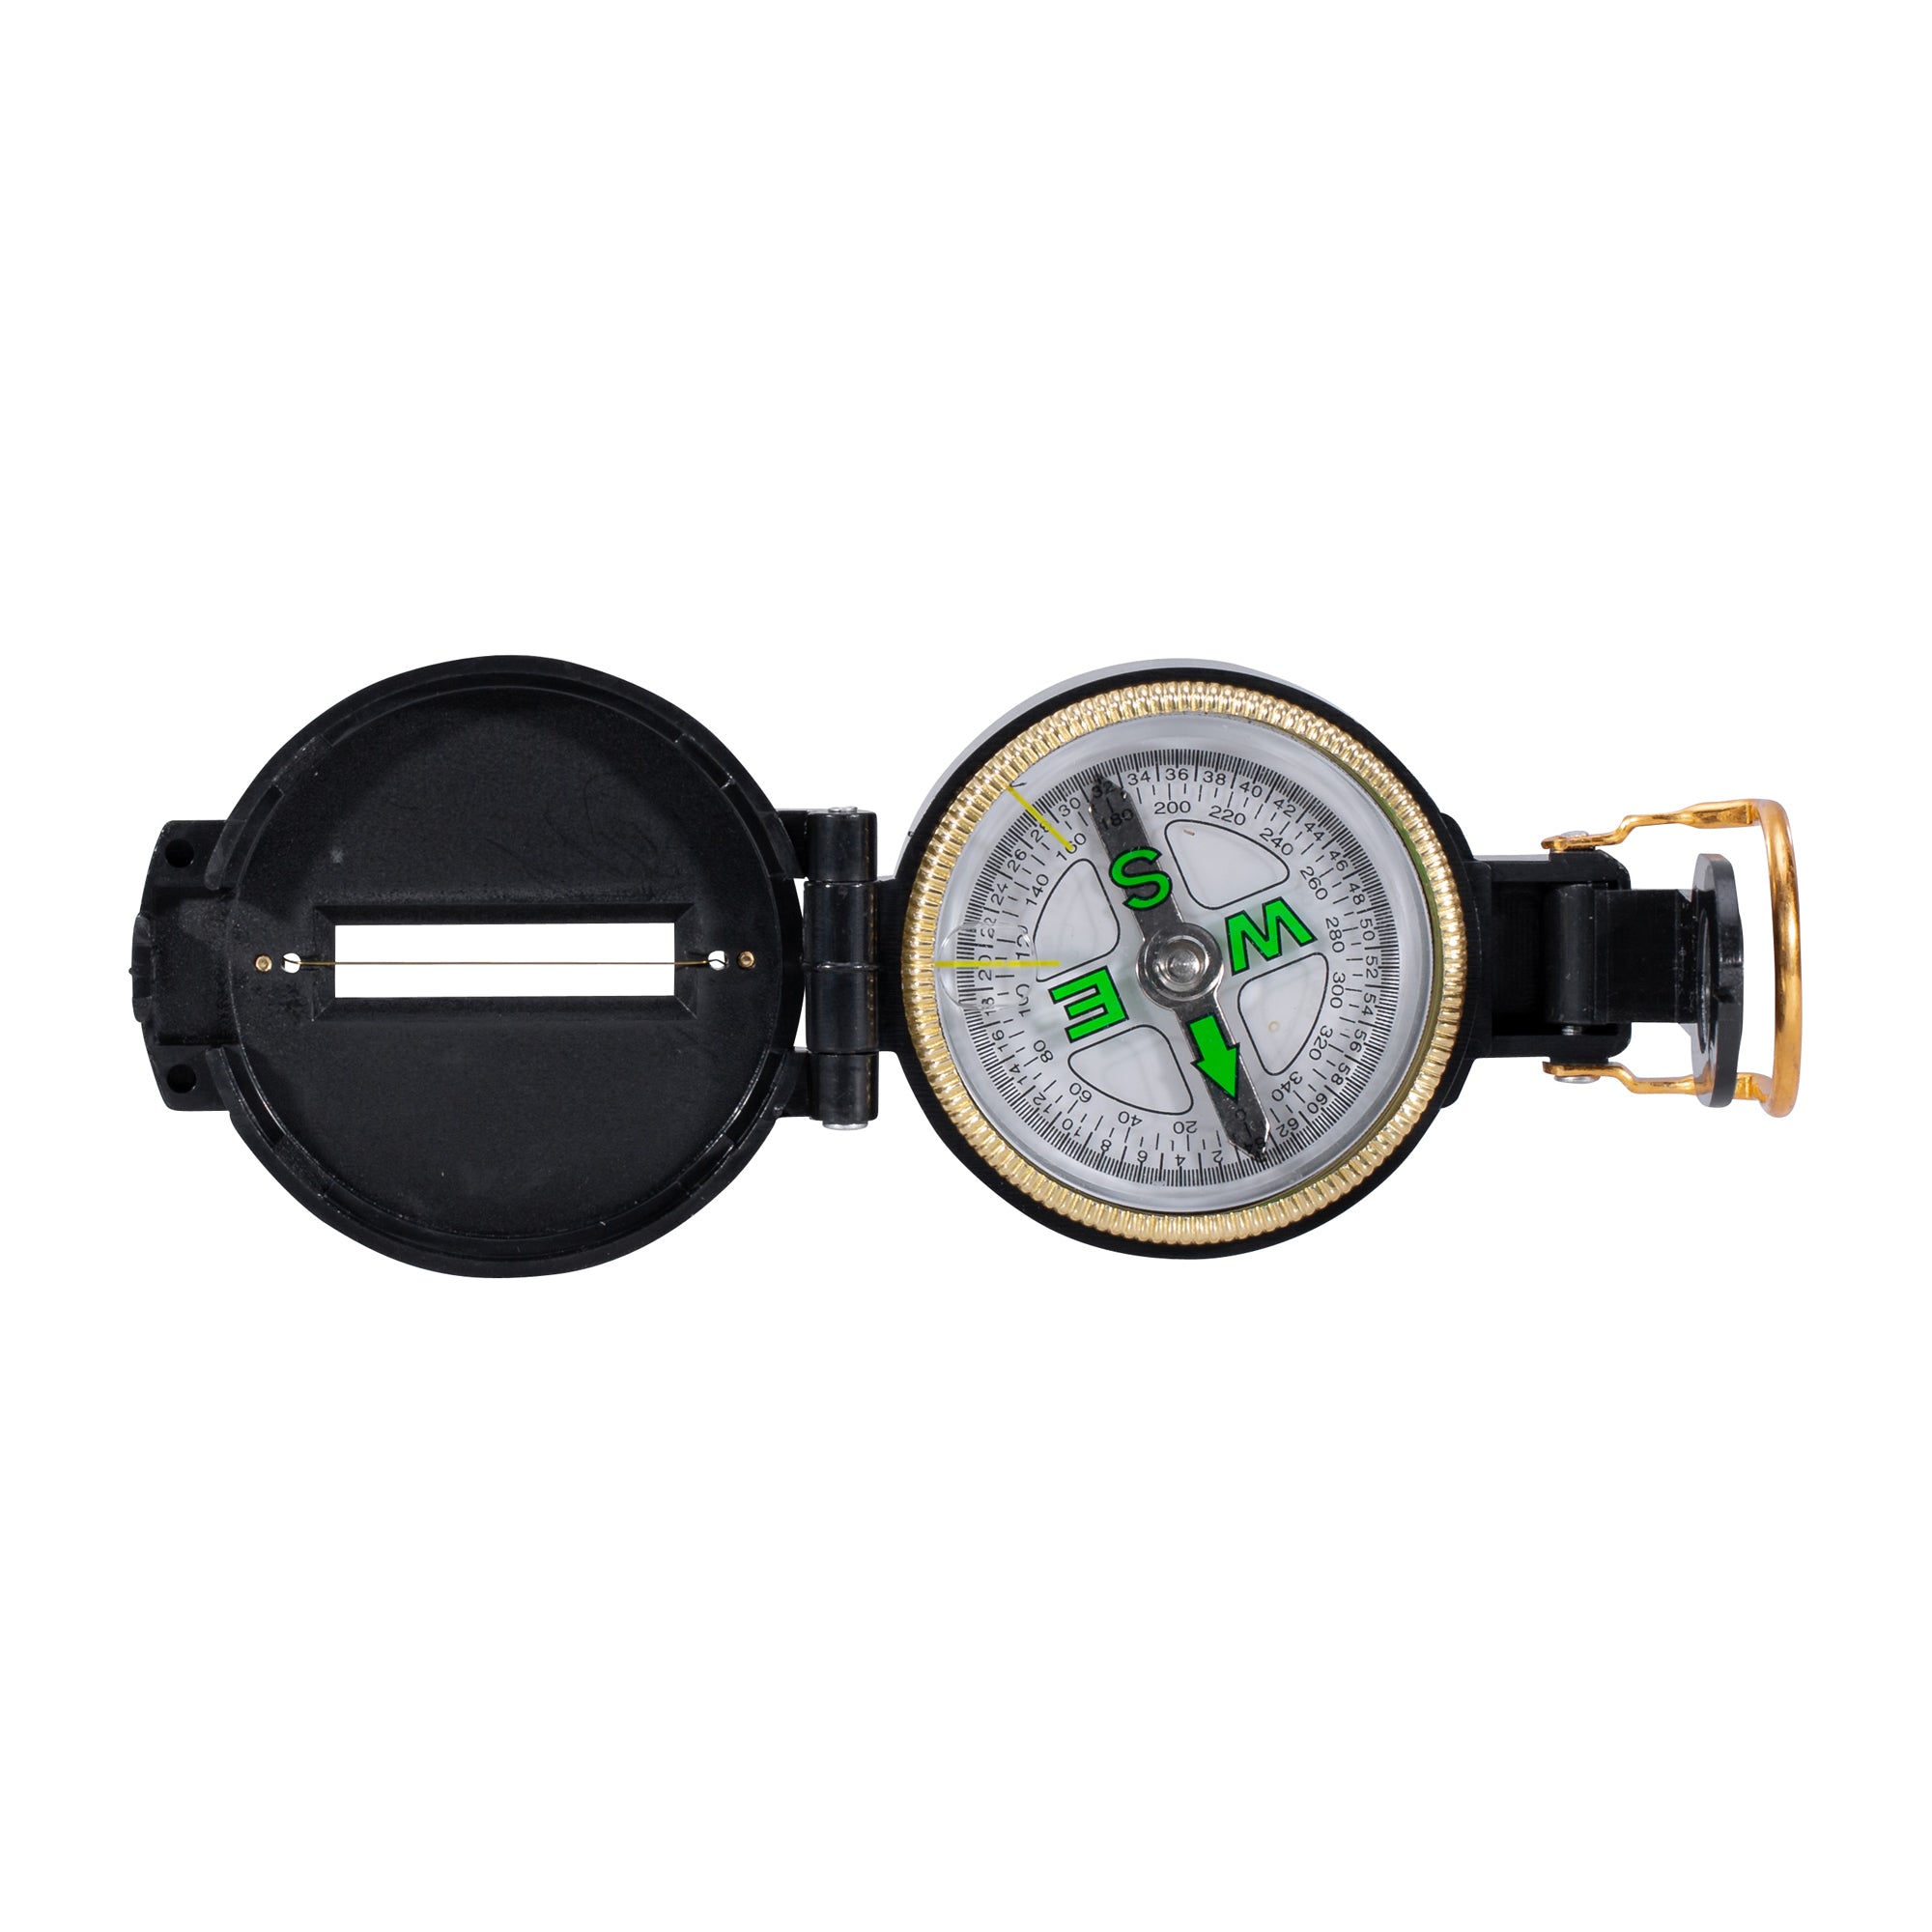 Kompass Scout mit Kunststoffgehäuse